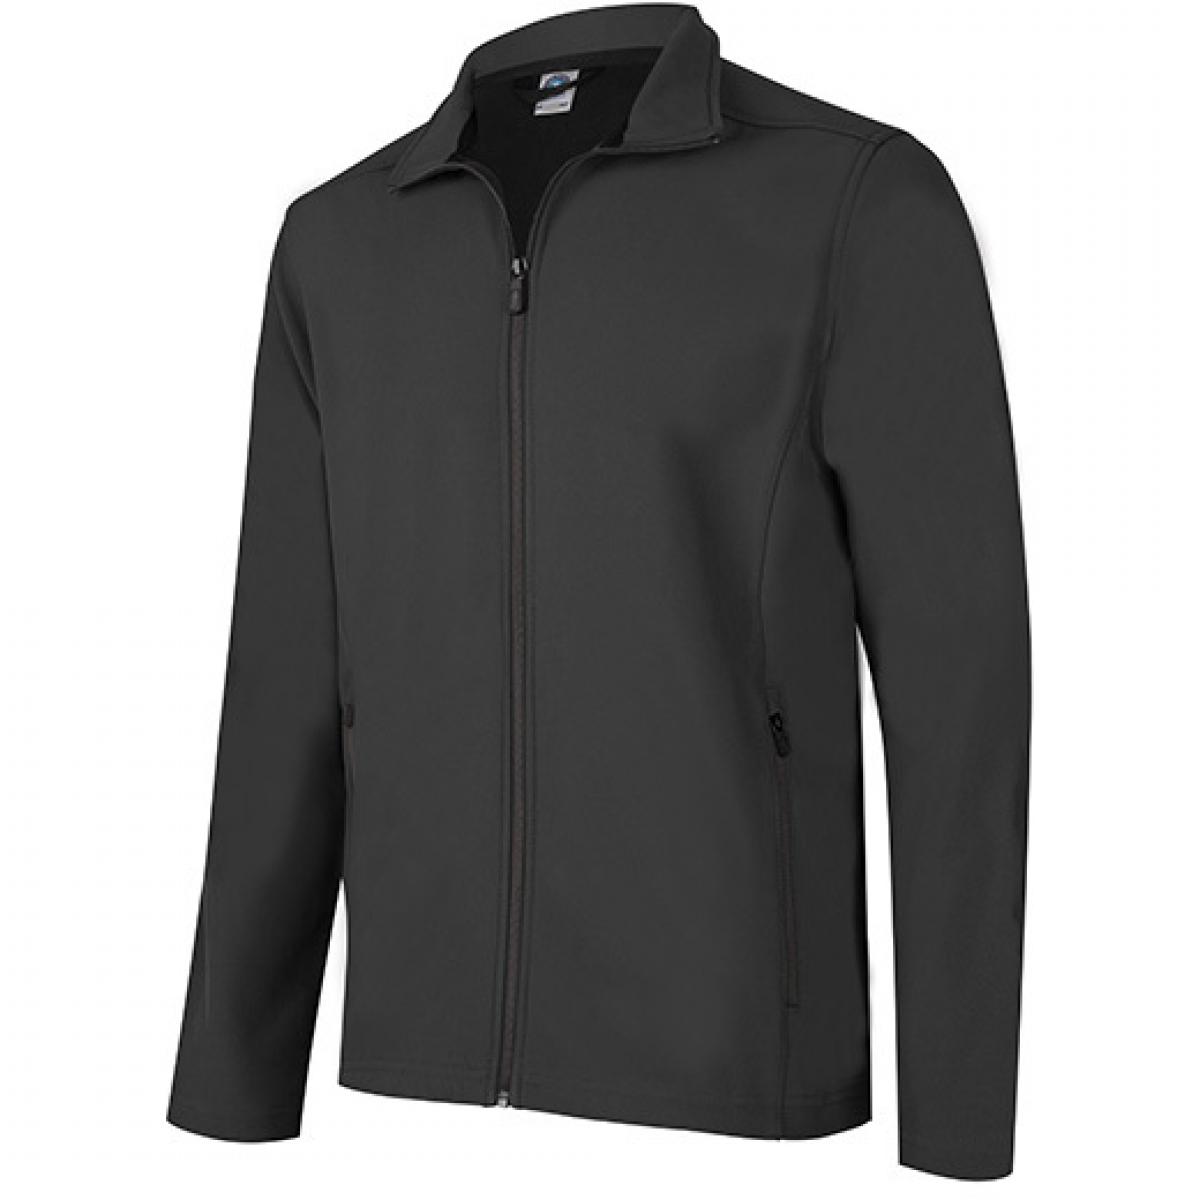 Hersteller: Starworld Herstellernummer: SW800 Artikelbezeichnung: Unisex Soft-Shell Jacke Farbe: Black